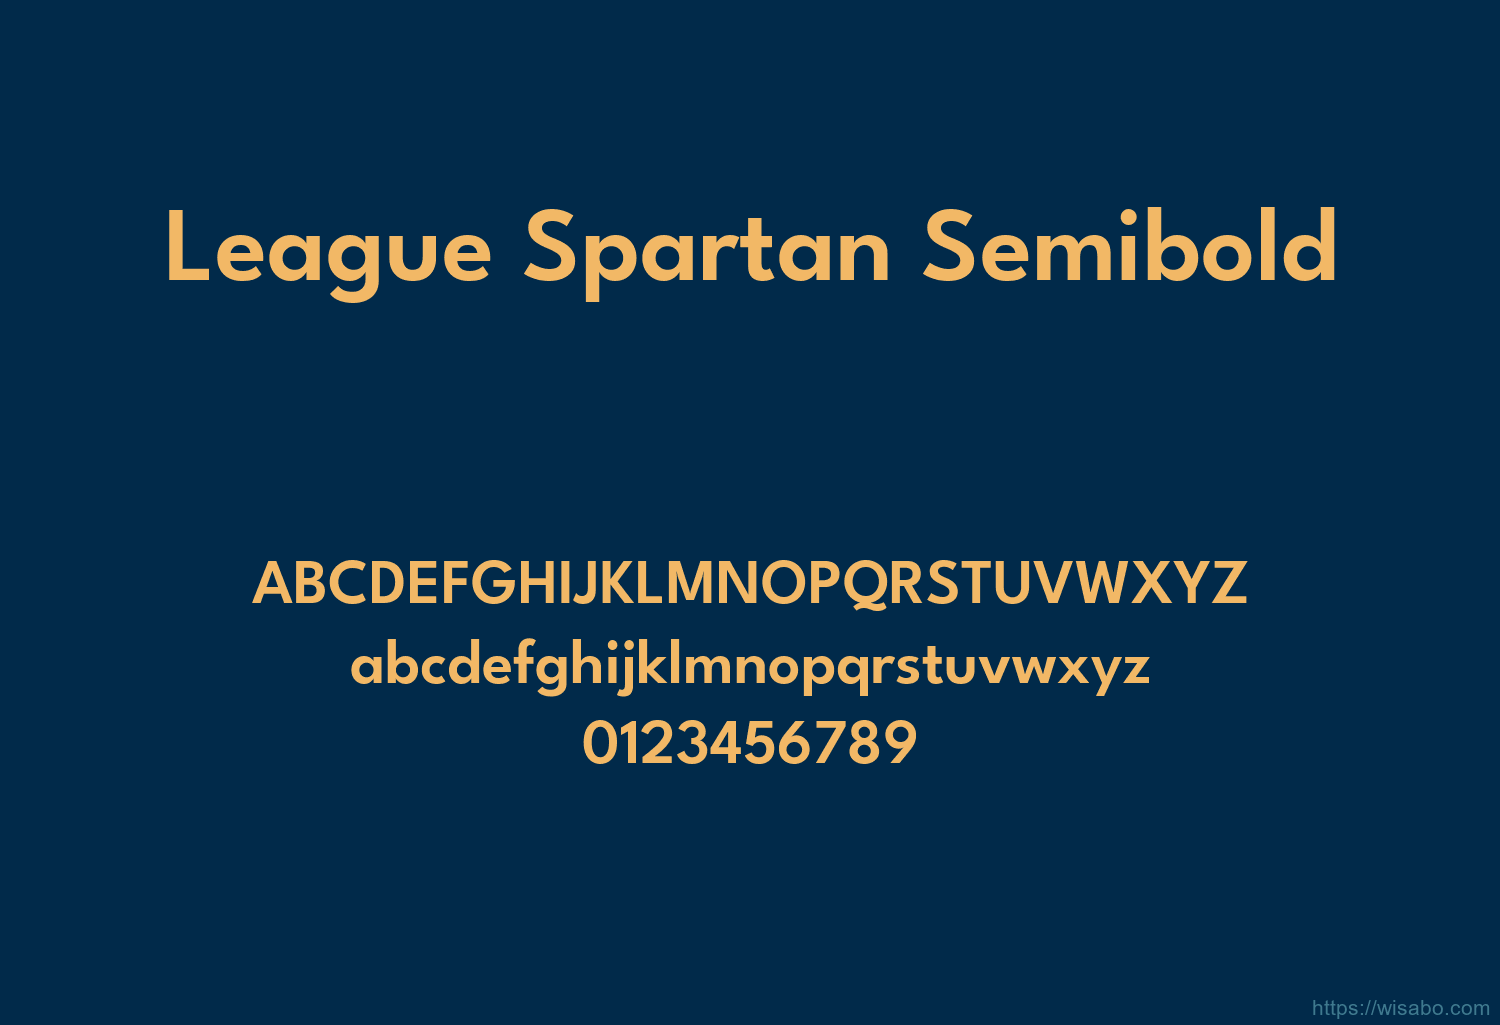 League Spartan Semibold